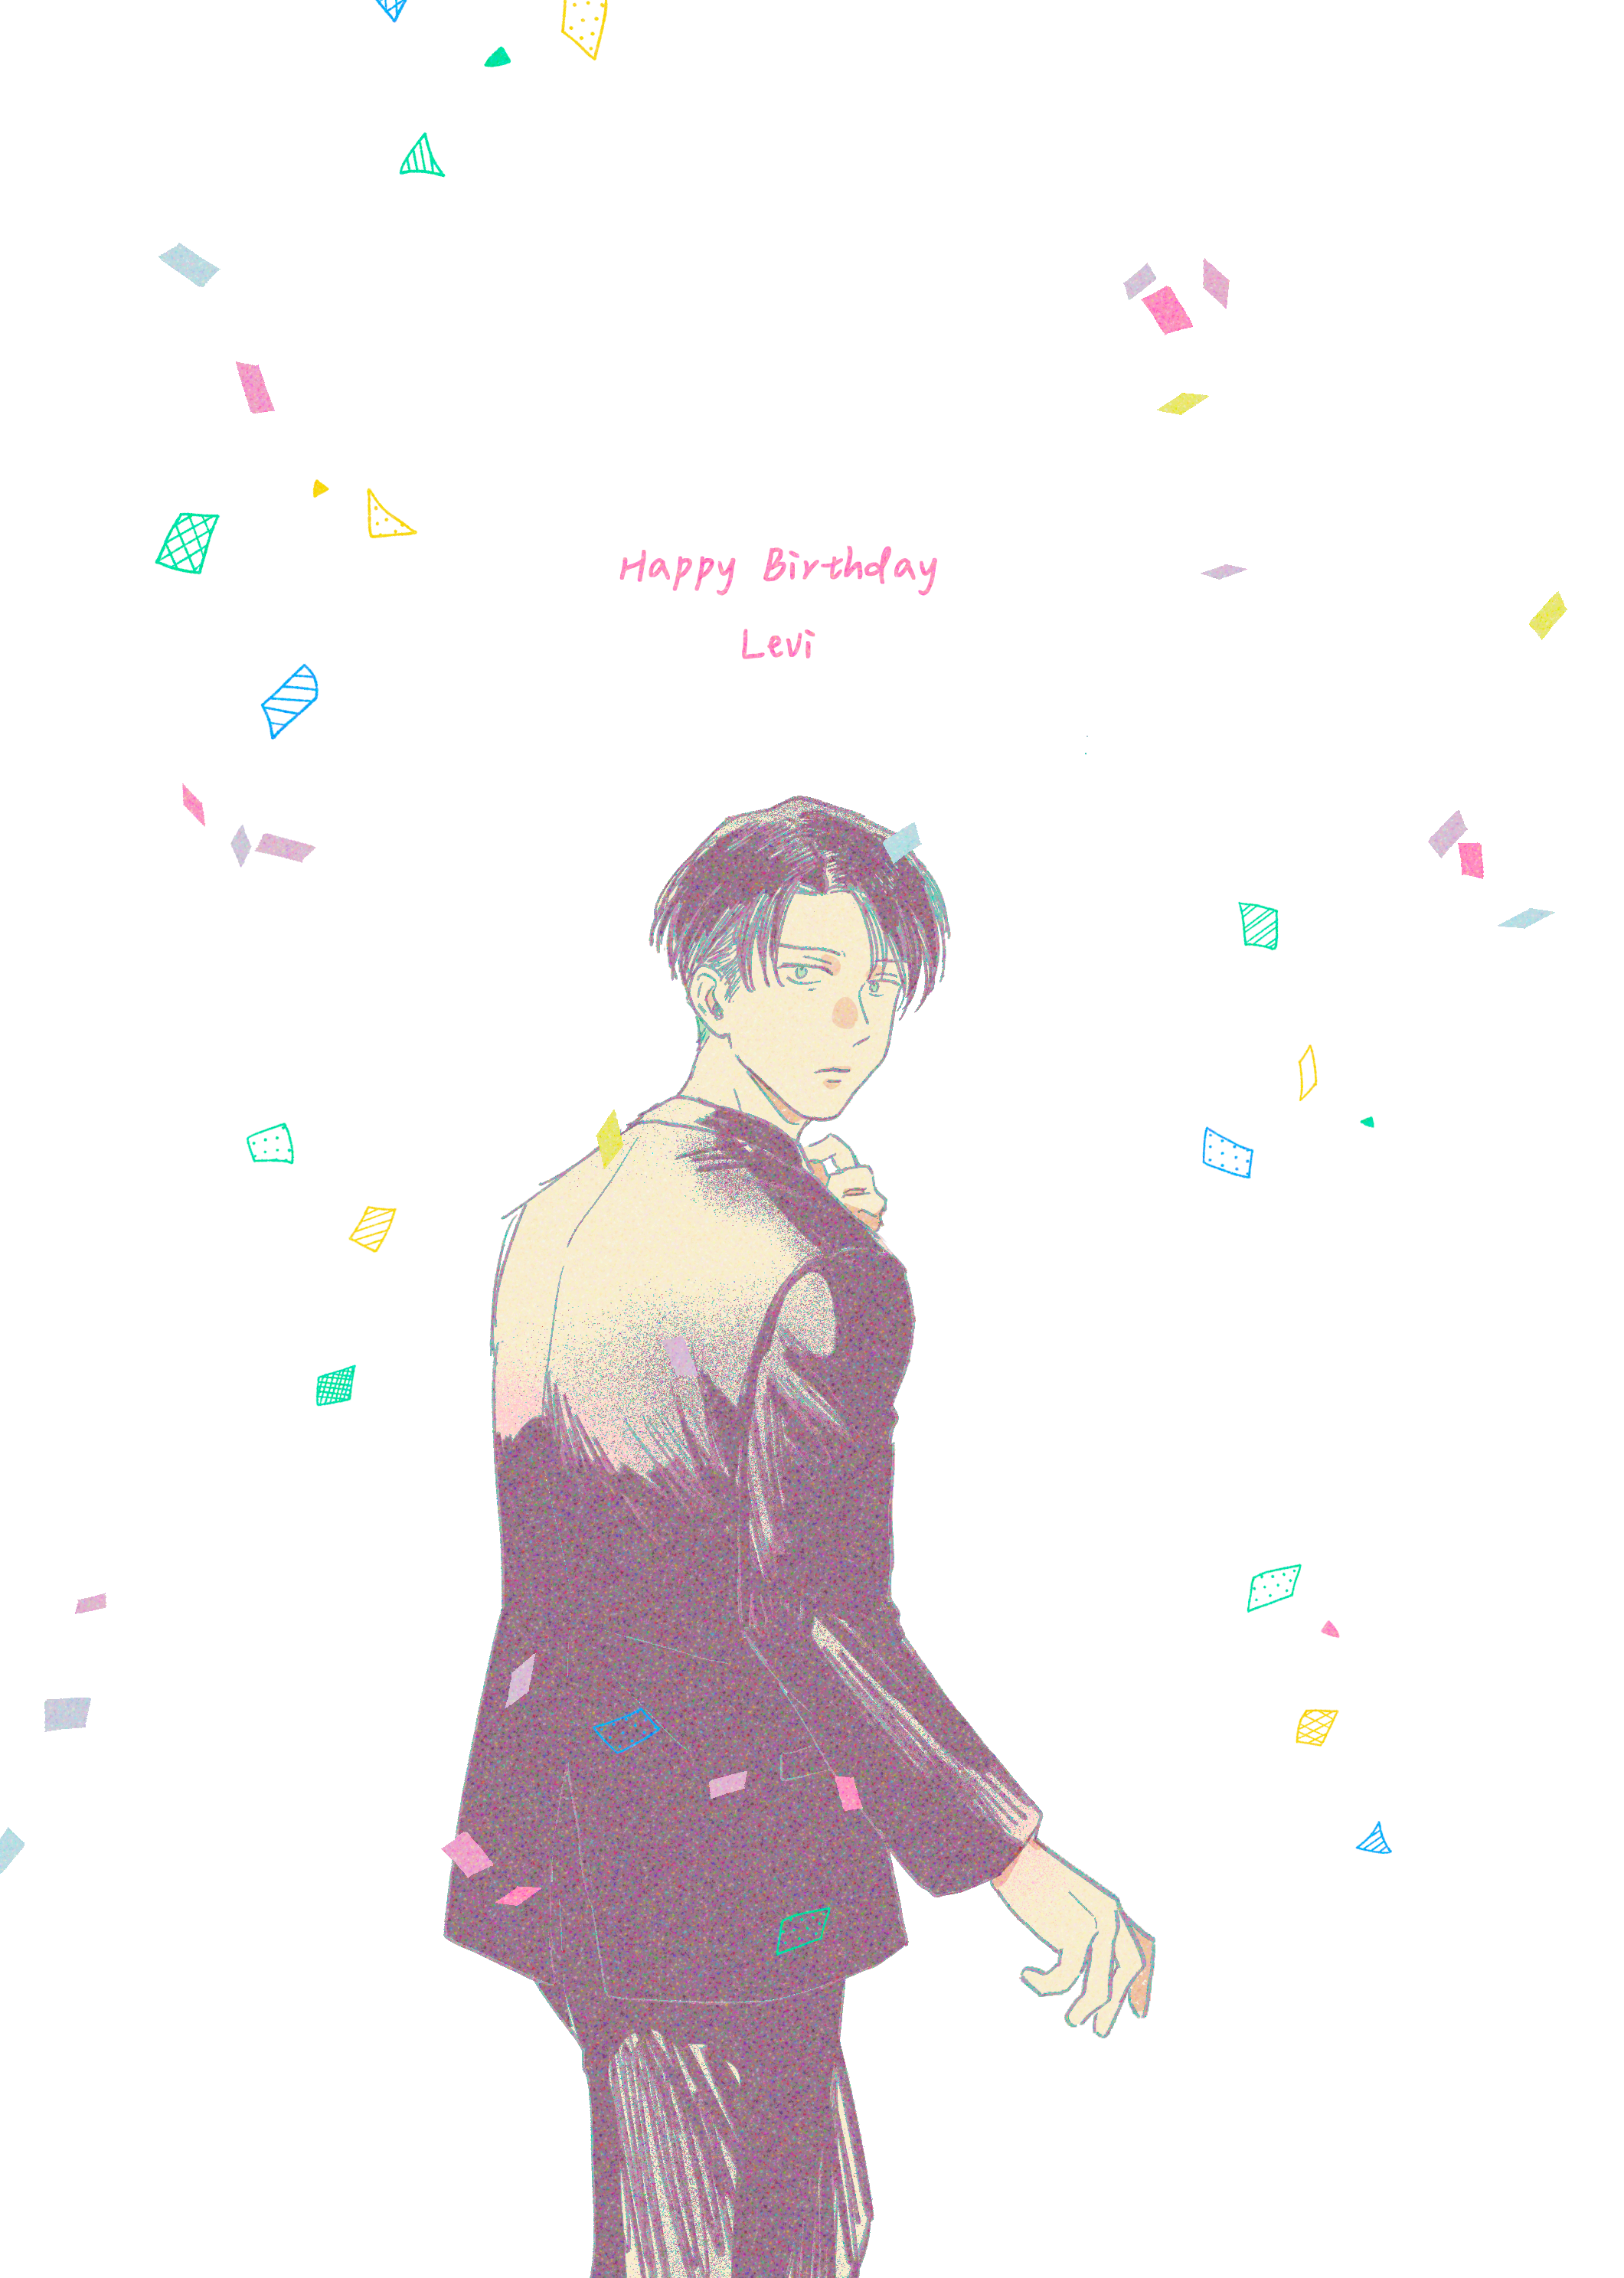 【巨人】Happy Birthday Levi